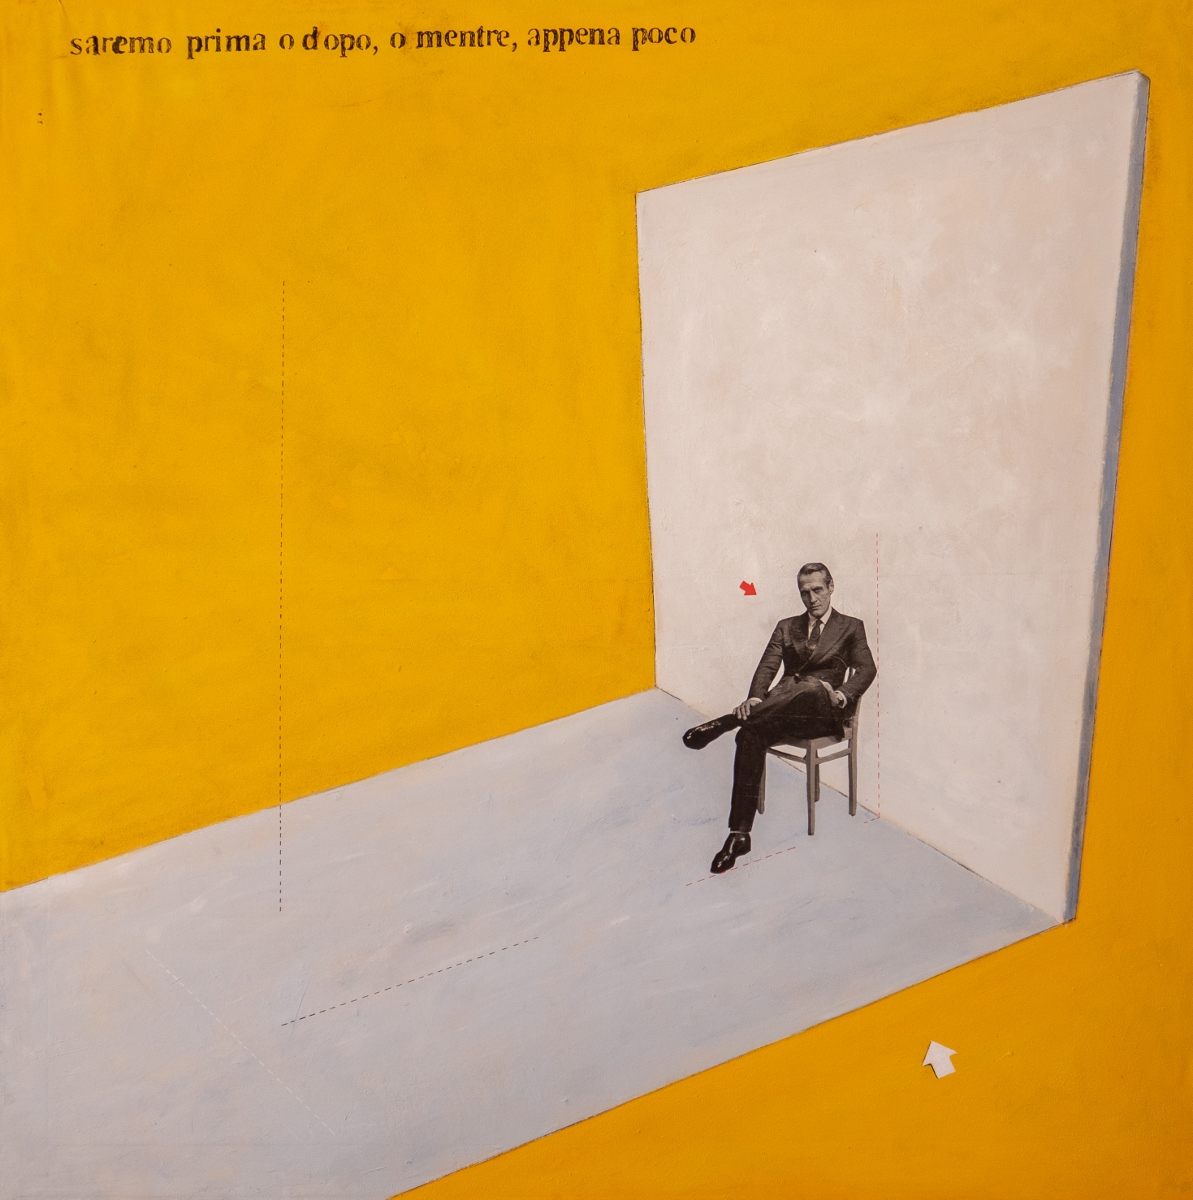 Alessandro Morino - Private rooms